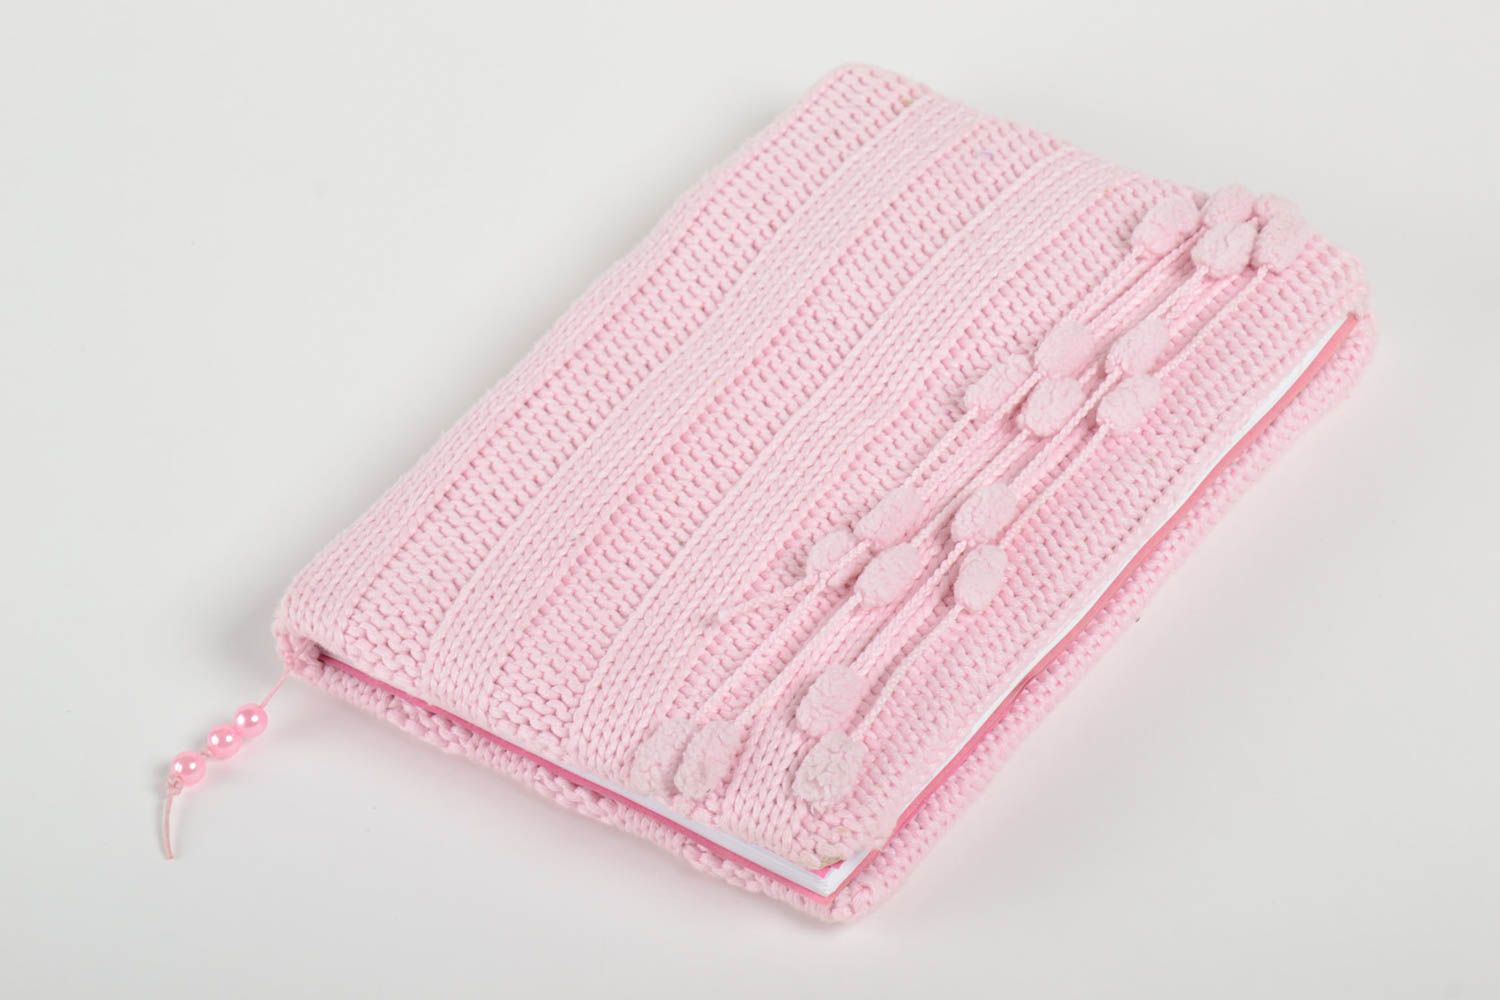 Carnet rose fait main Journal intime tricoté avec aiguilles Cadeau femme photo 2